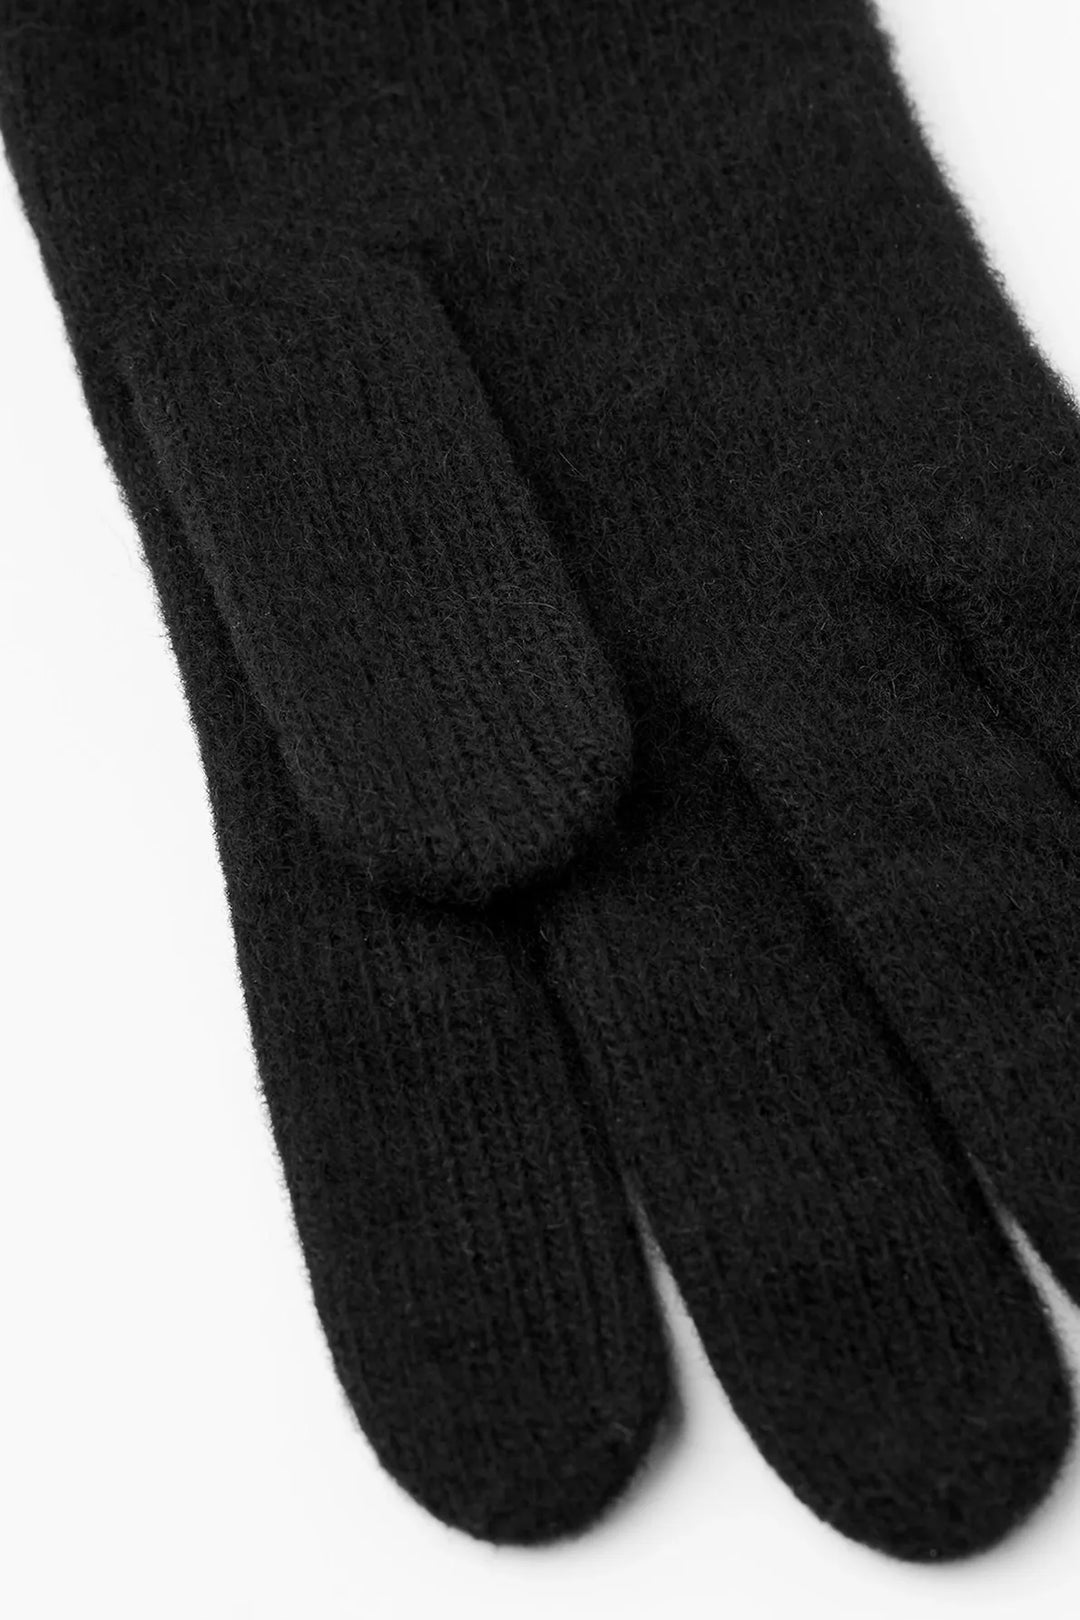 Handsker | Hestra Ladies Cashmere Gloves, 64010 black